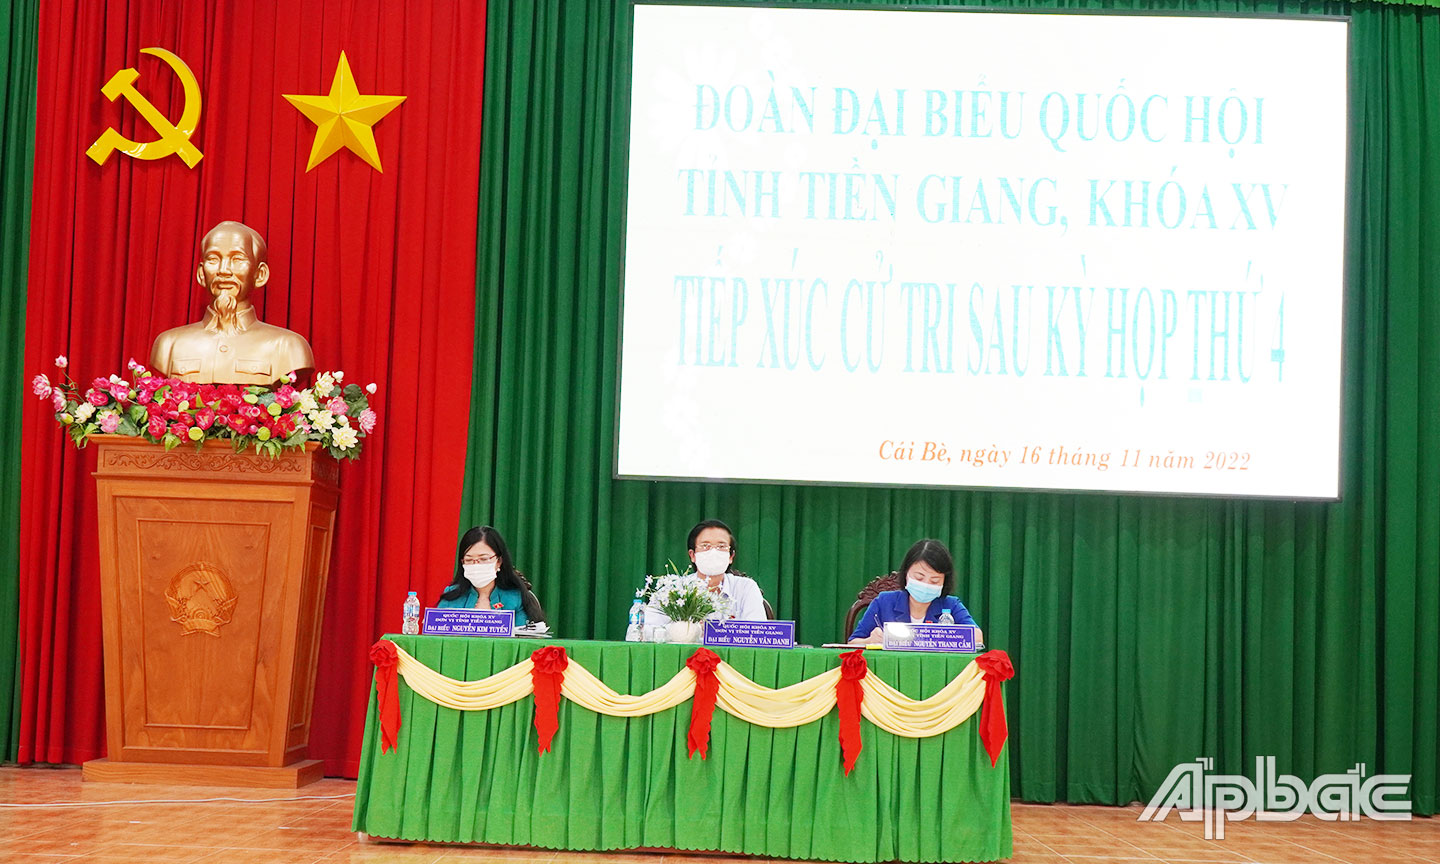 Đồng chí Nguyễn Văn Danh và các ĐBQH lắng nghe và ghi nhận ý kiến cử tri.